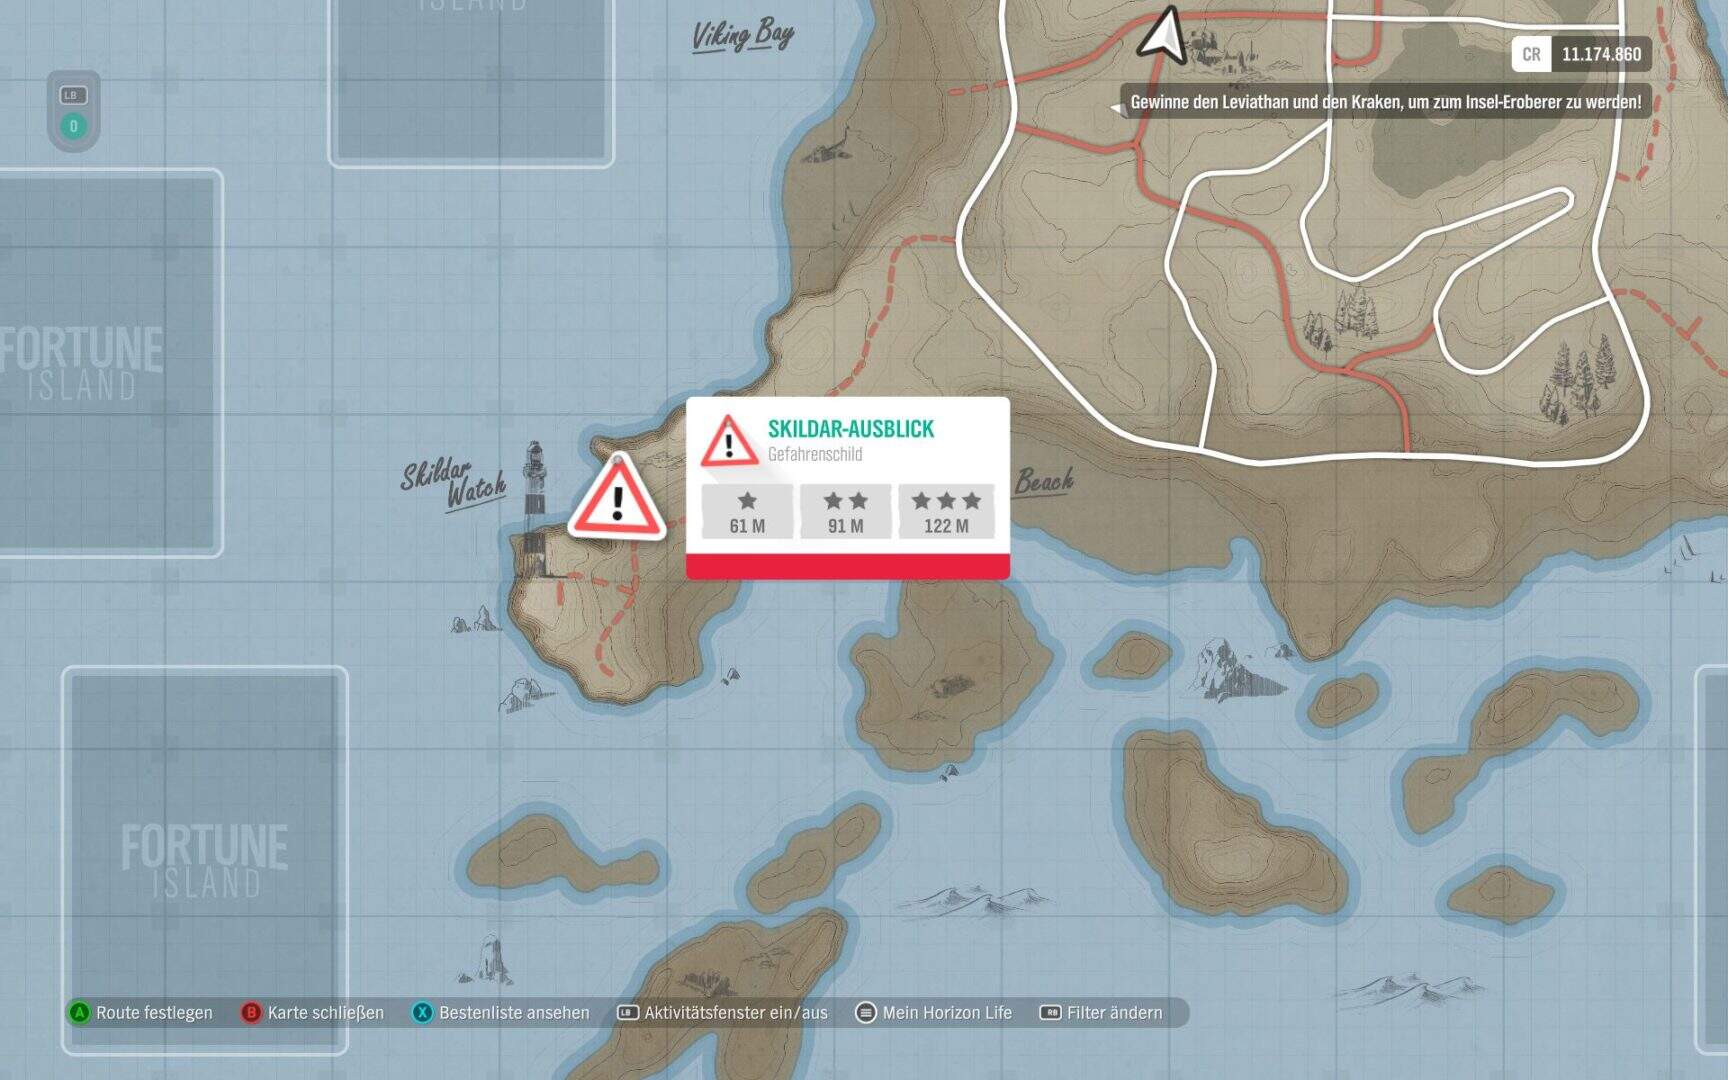 Forza Horizon 4 Fortune Island Skildar-Ausblick Gefahrenschild